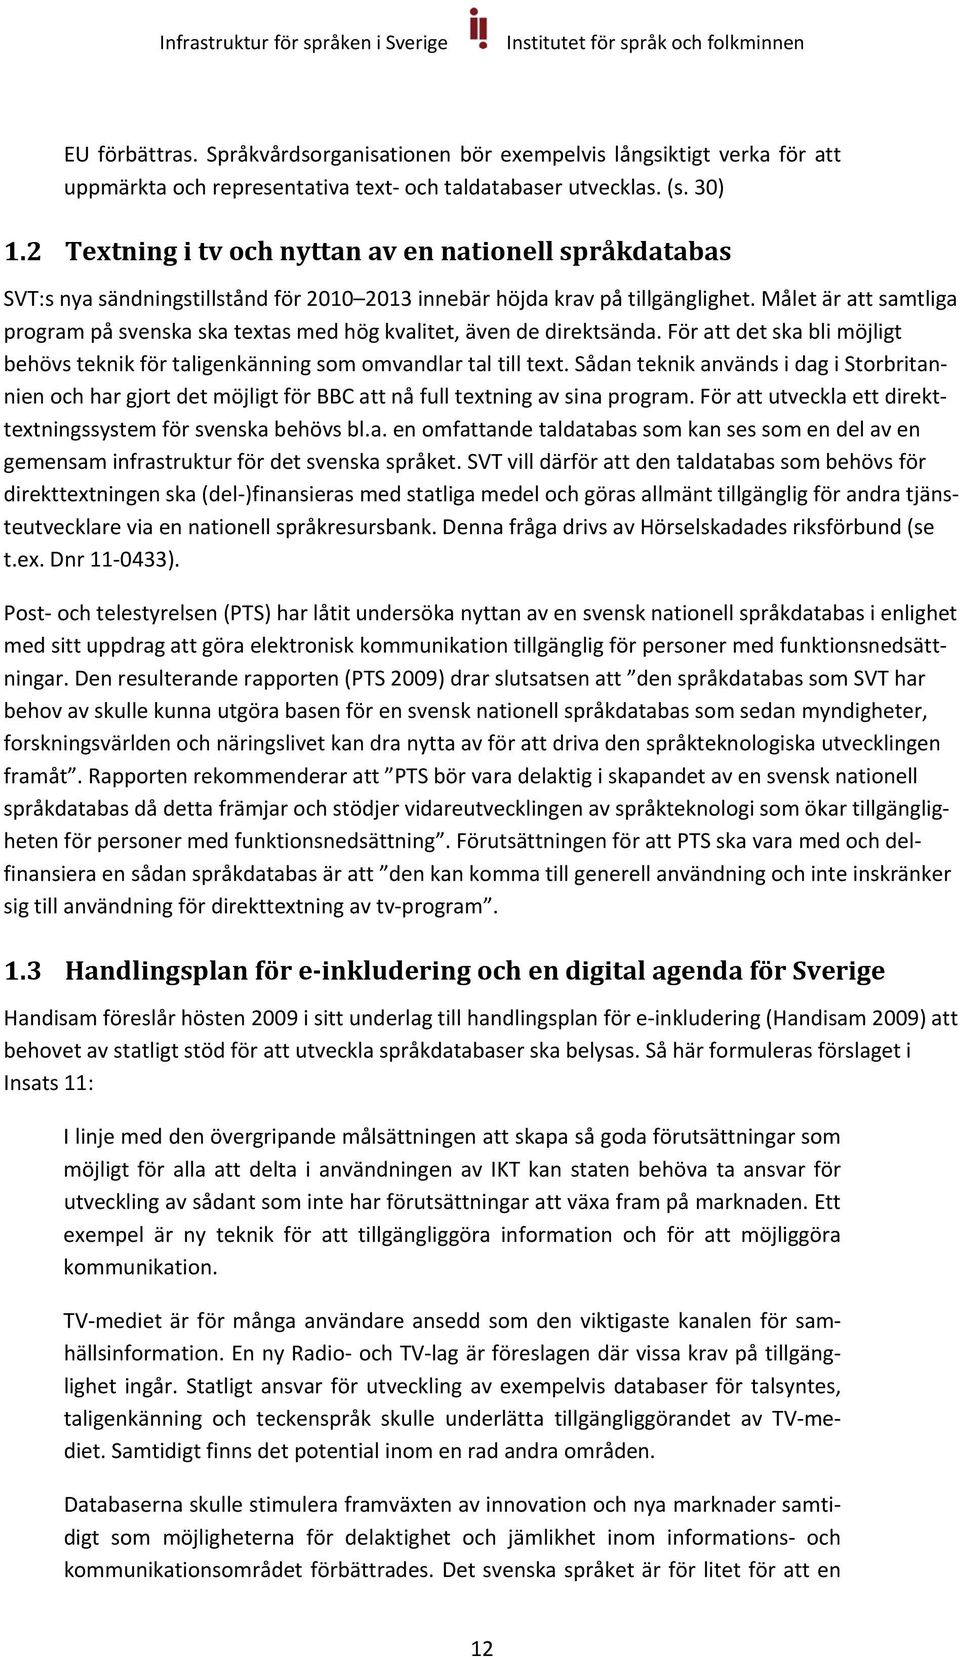 Målet är att samtliga program på svenska ska textas med hög kvalitet, även de direktsända. För att det ska bli möjligt behövs teknik för taligenkänning som omvandlar tal till text.